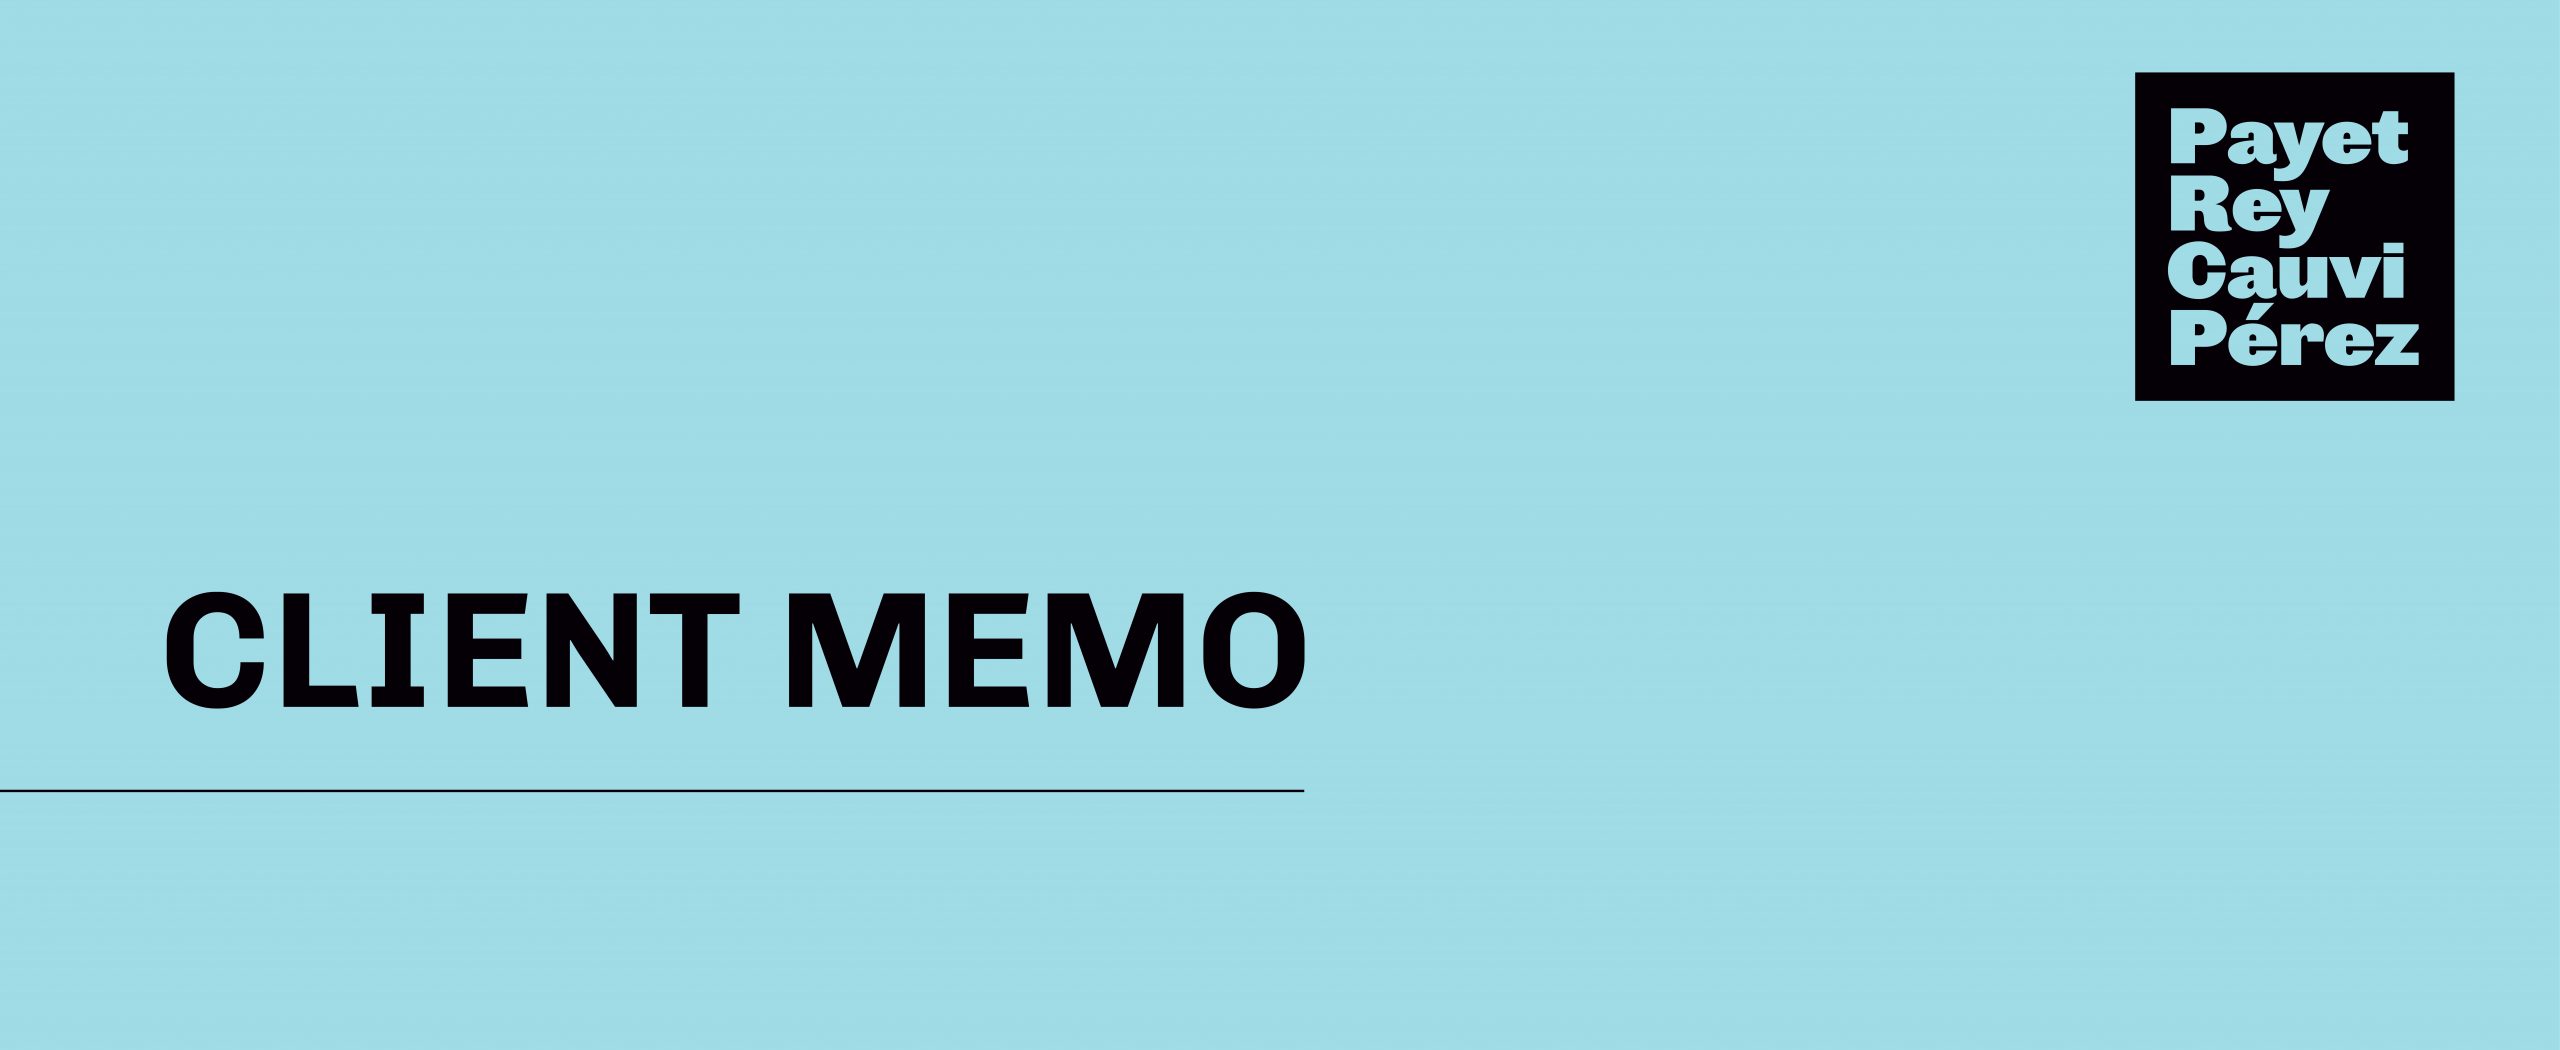 Client Memo – Proyecto de Lineamiento del Programa de Recompensas